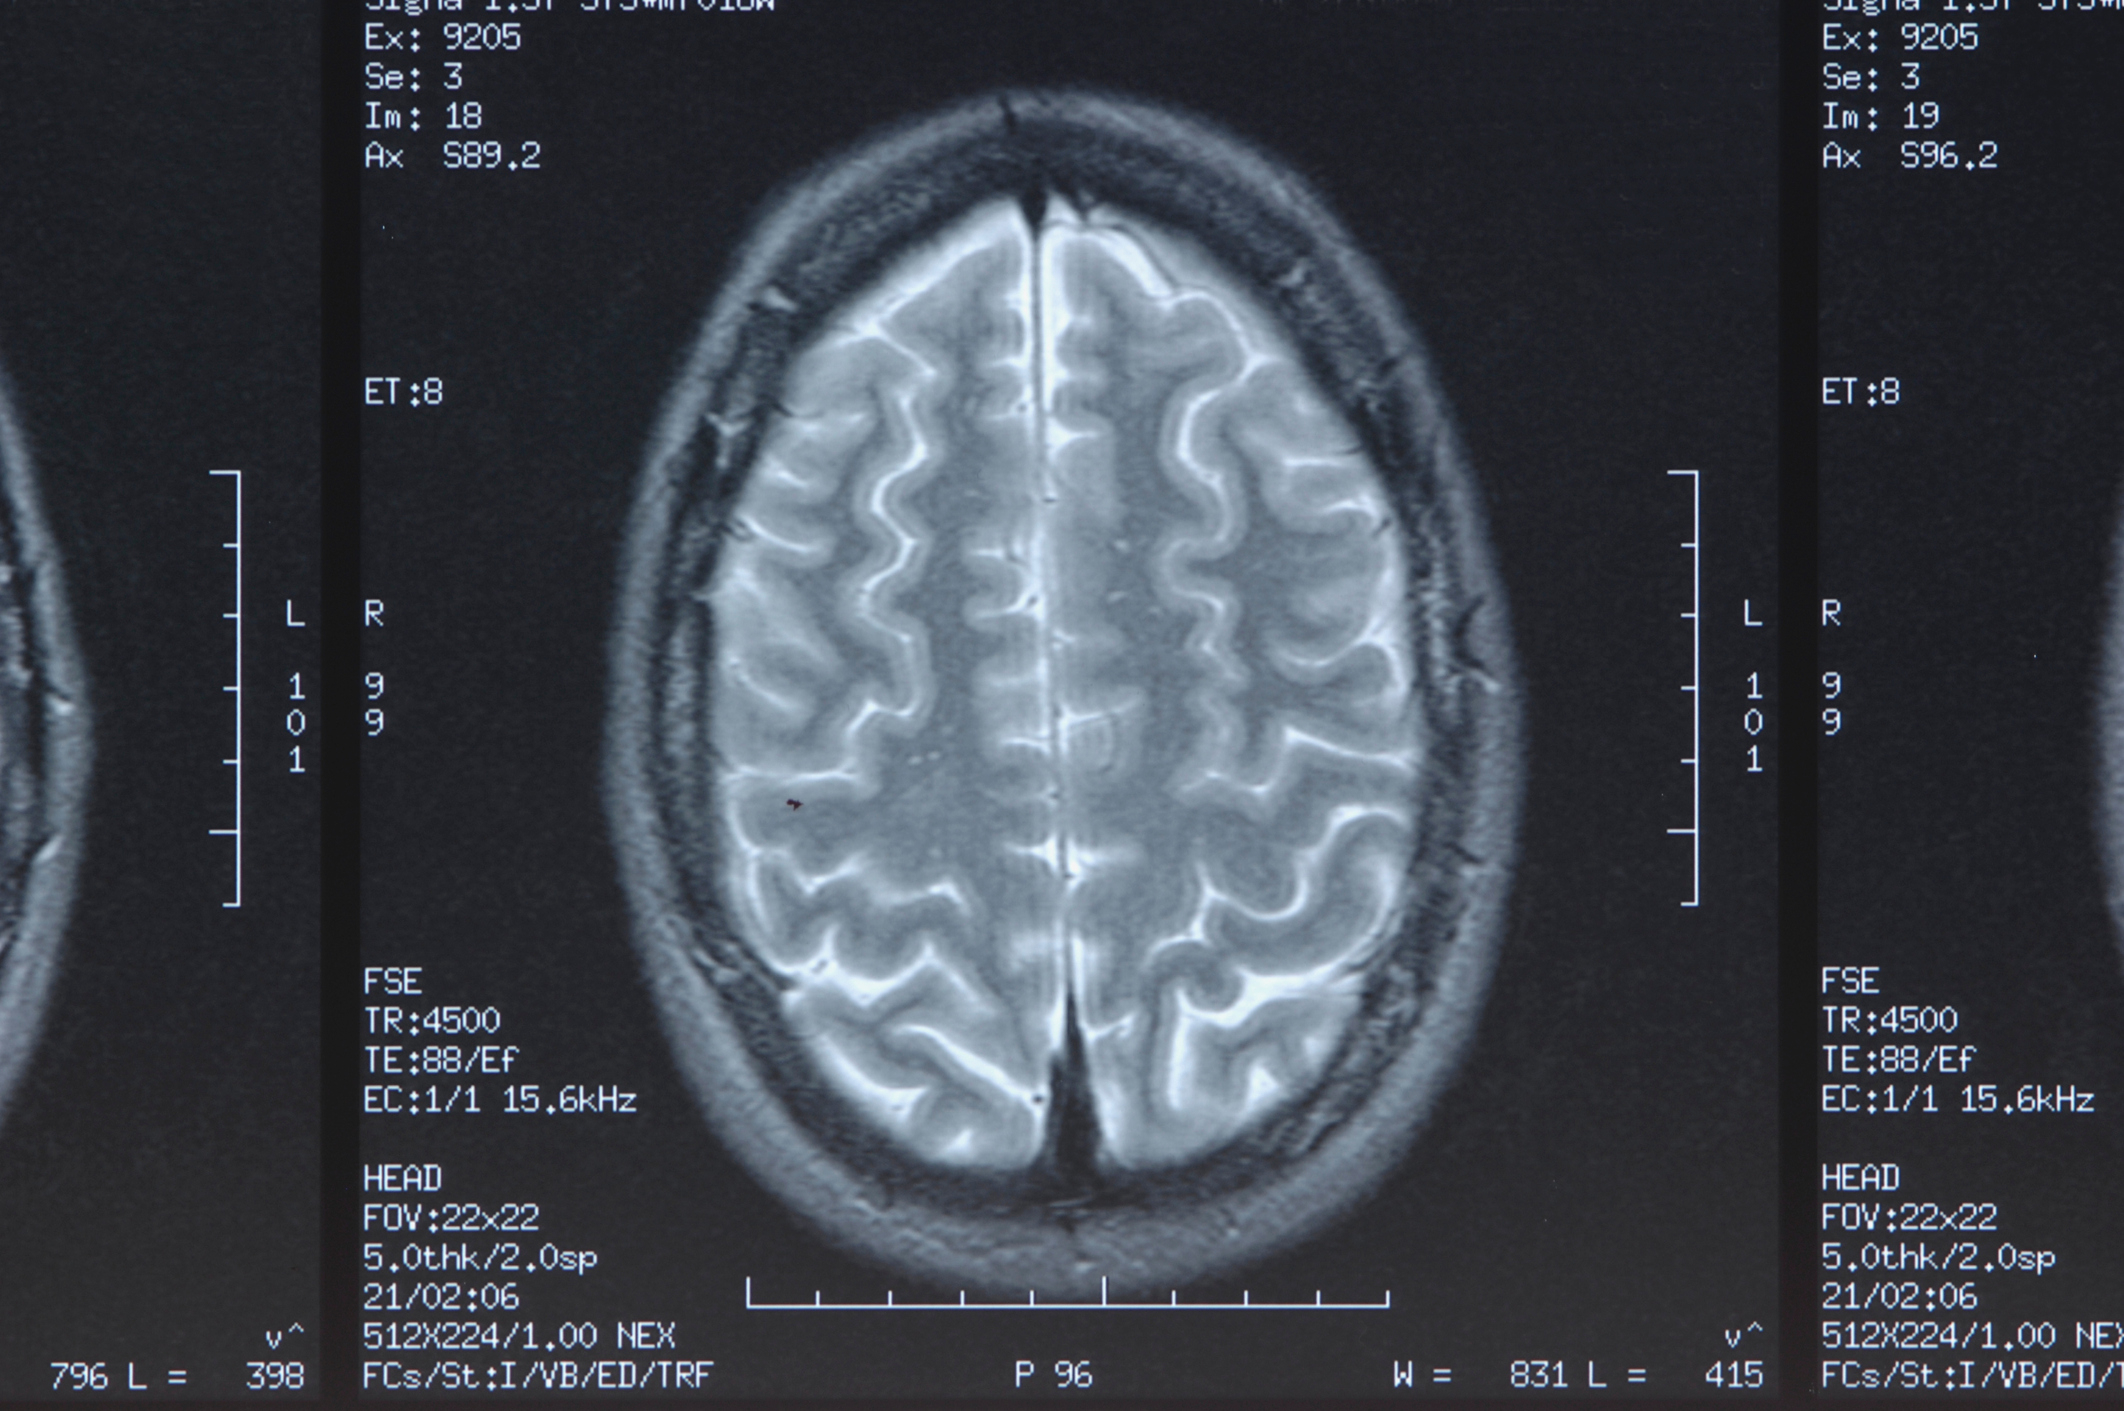 a brain scan